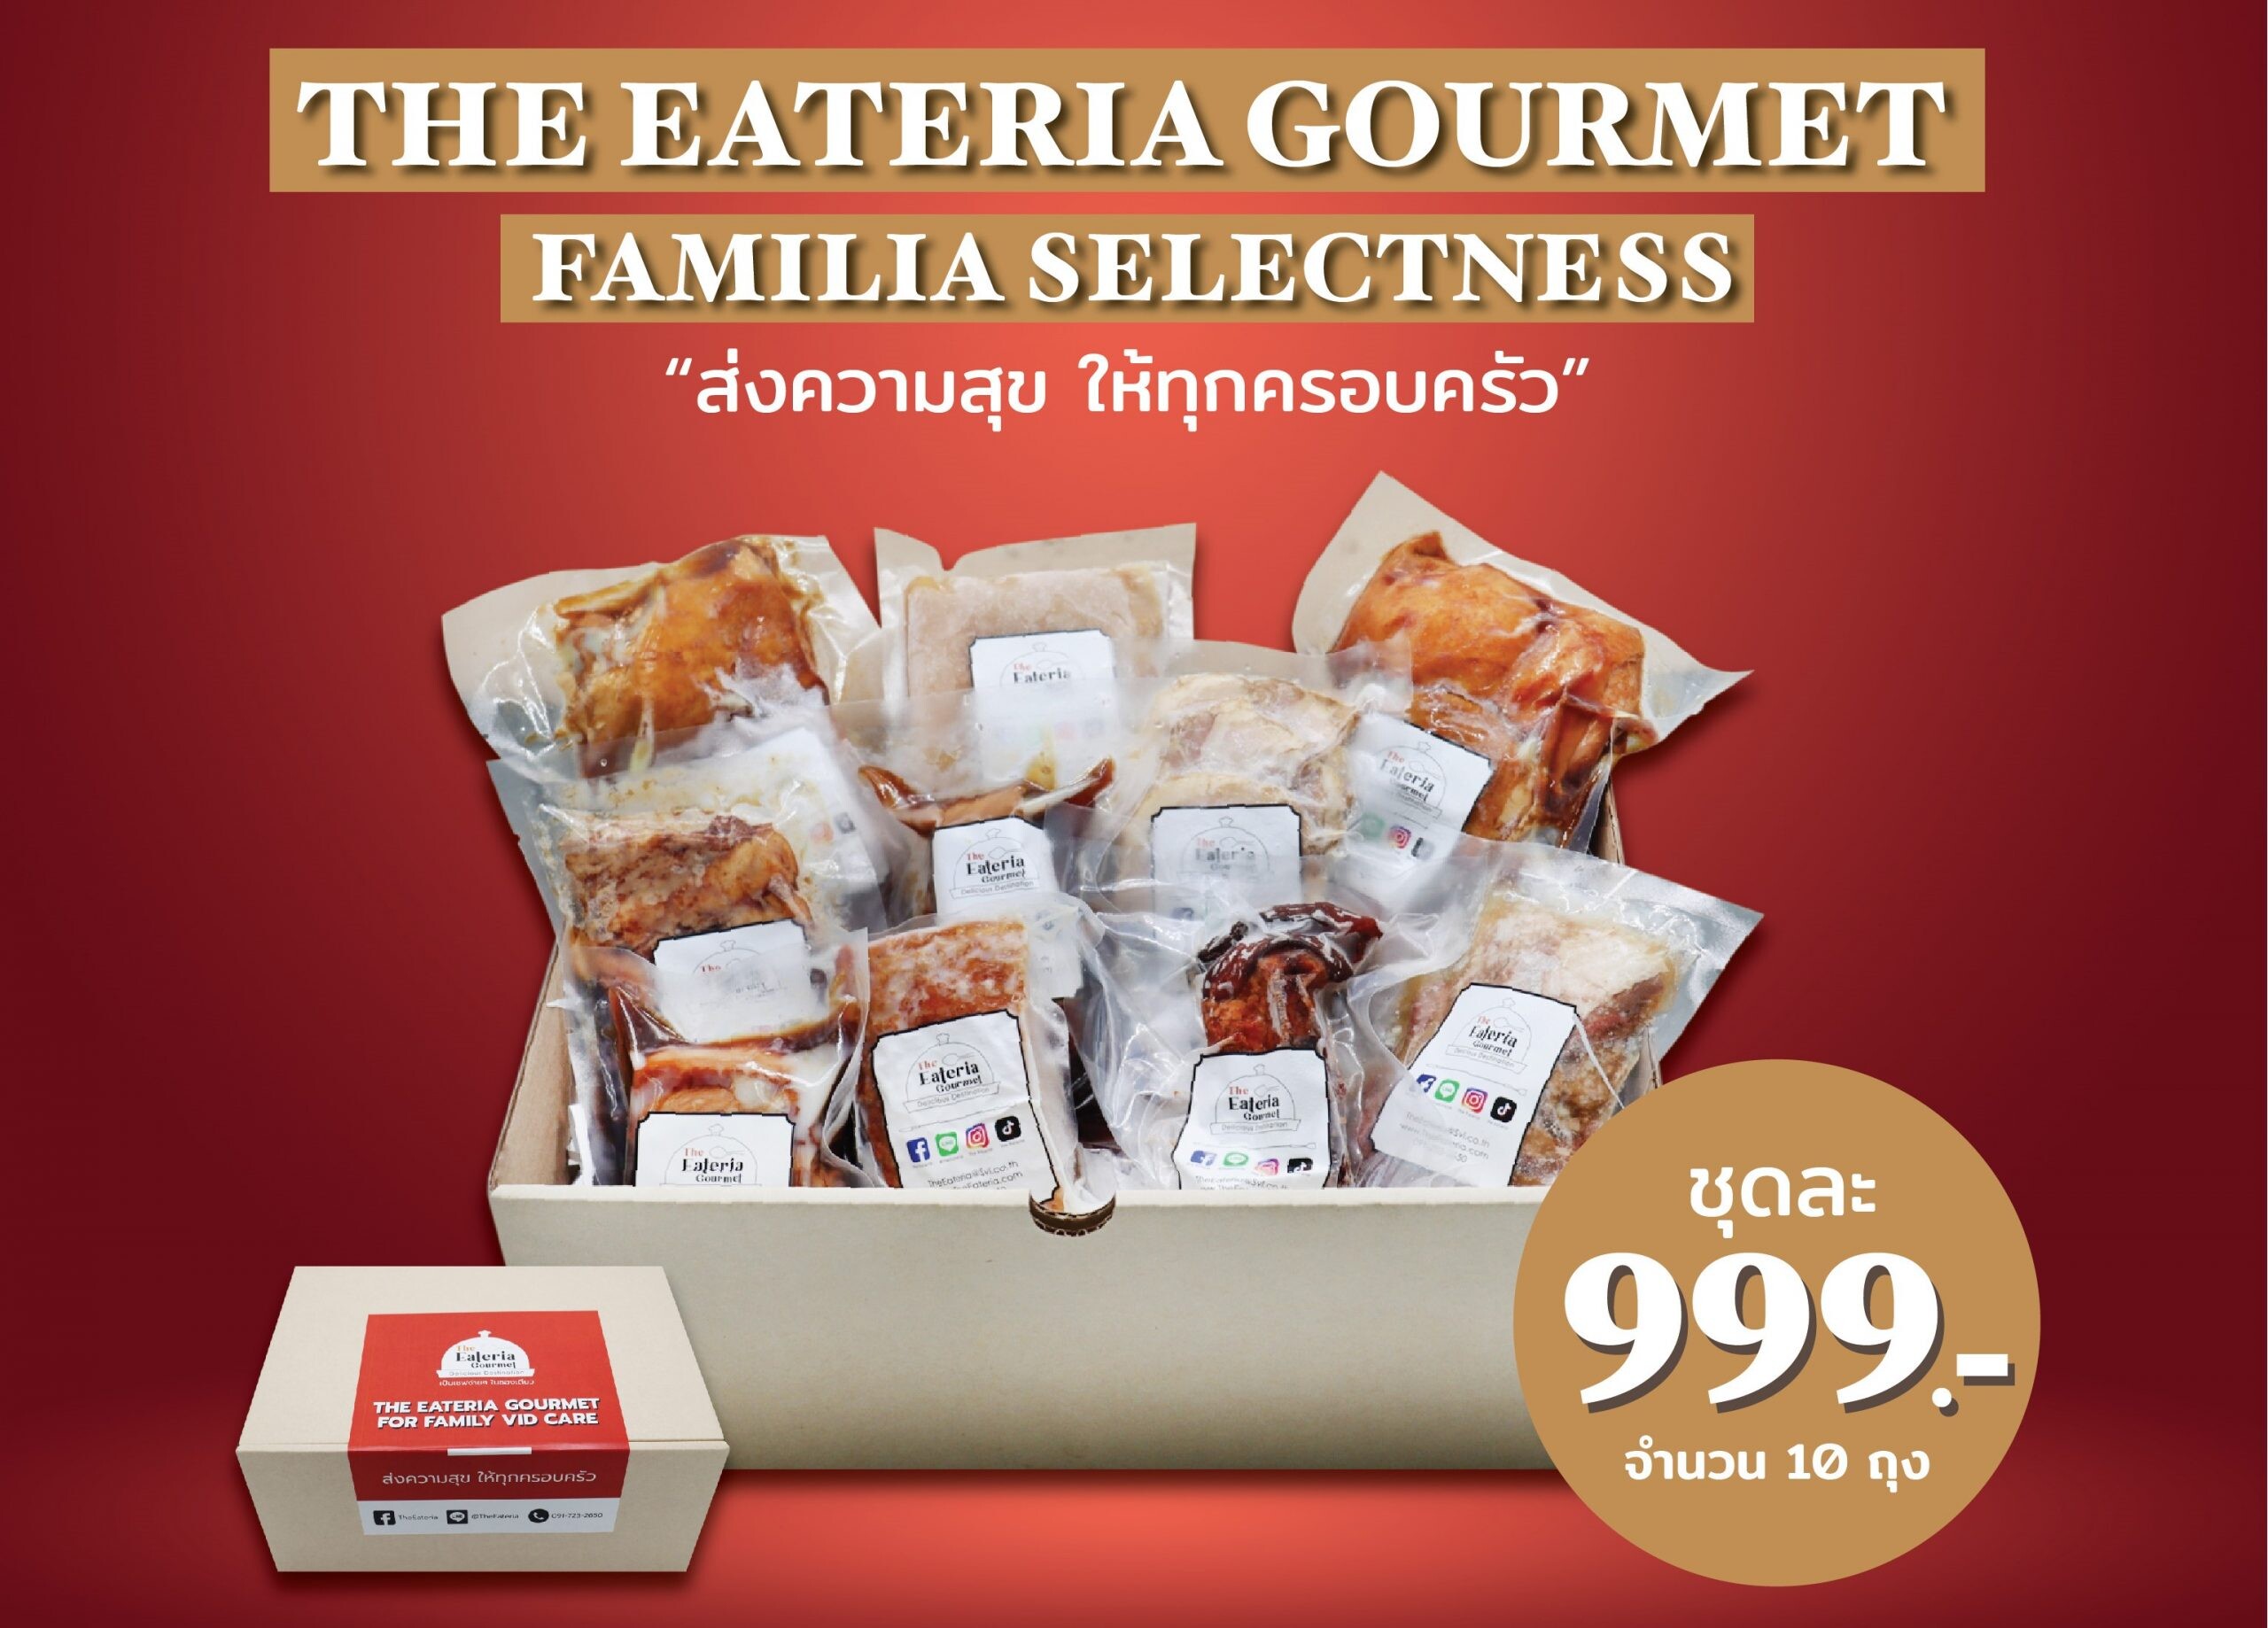 เปิดตัวThe Eateria Gourmet : Familia Selectness "ส่งความสุข ให้ทุกครอบครัว" วัตถุดิบพร้อมทาน อร่อย คุณภาพดี ปลอดภัย เก็บได้นาน ตอบโจทย์ช่วง Lockdown